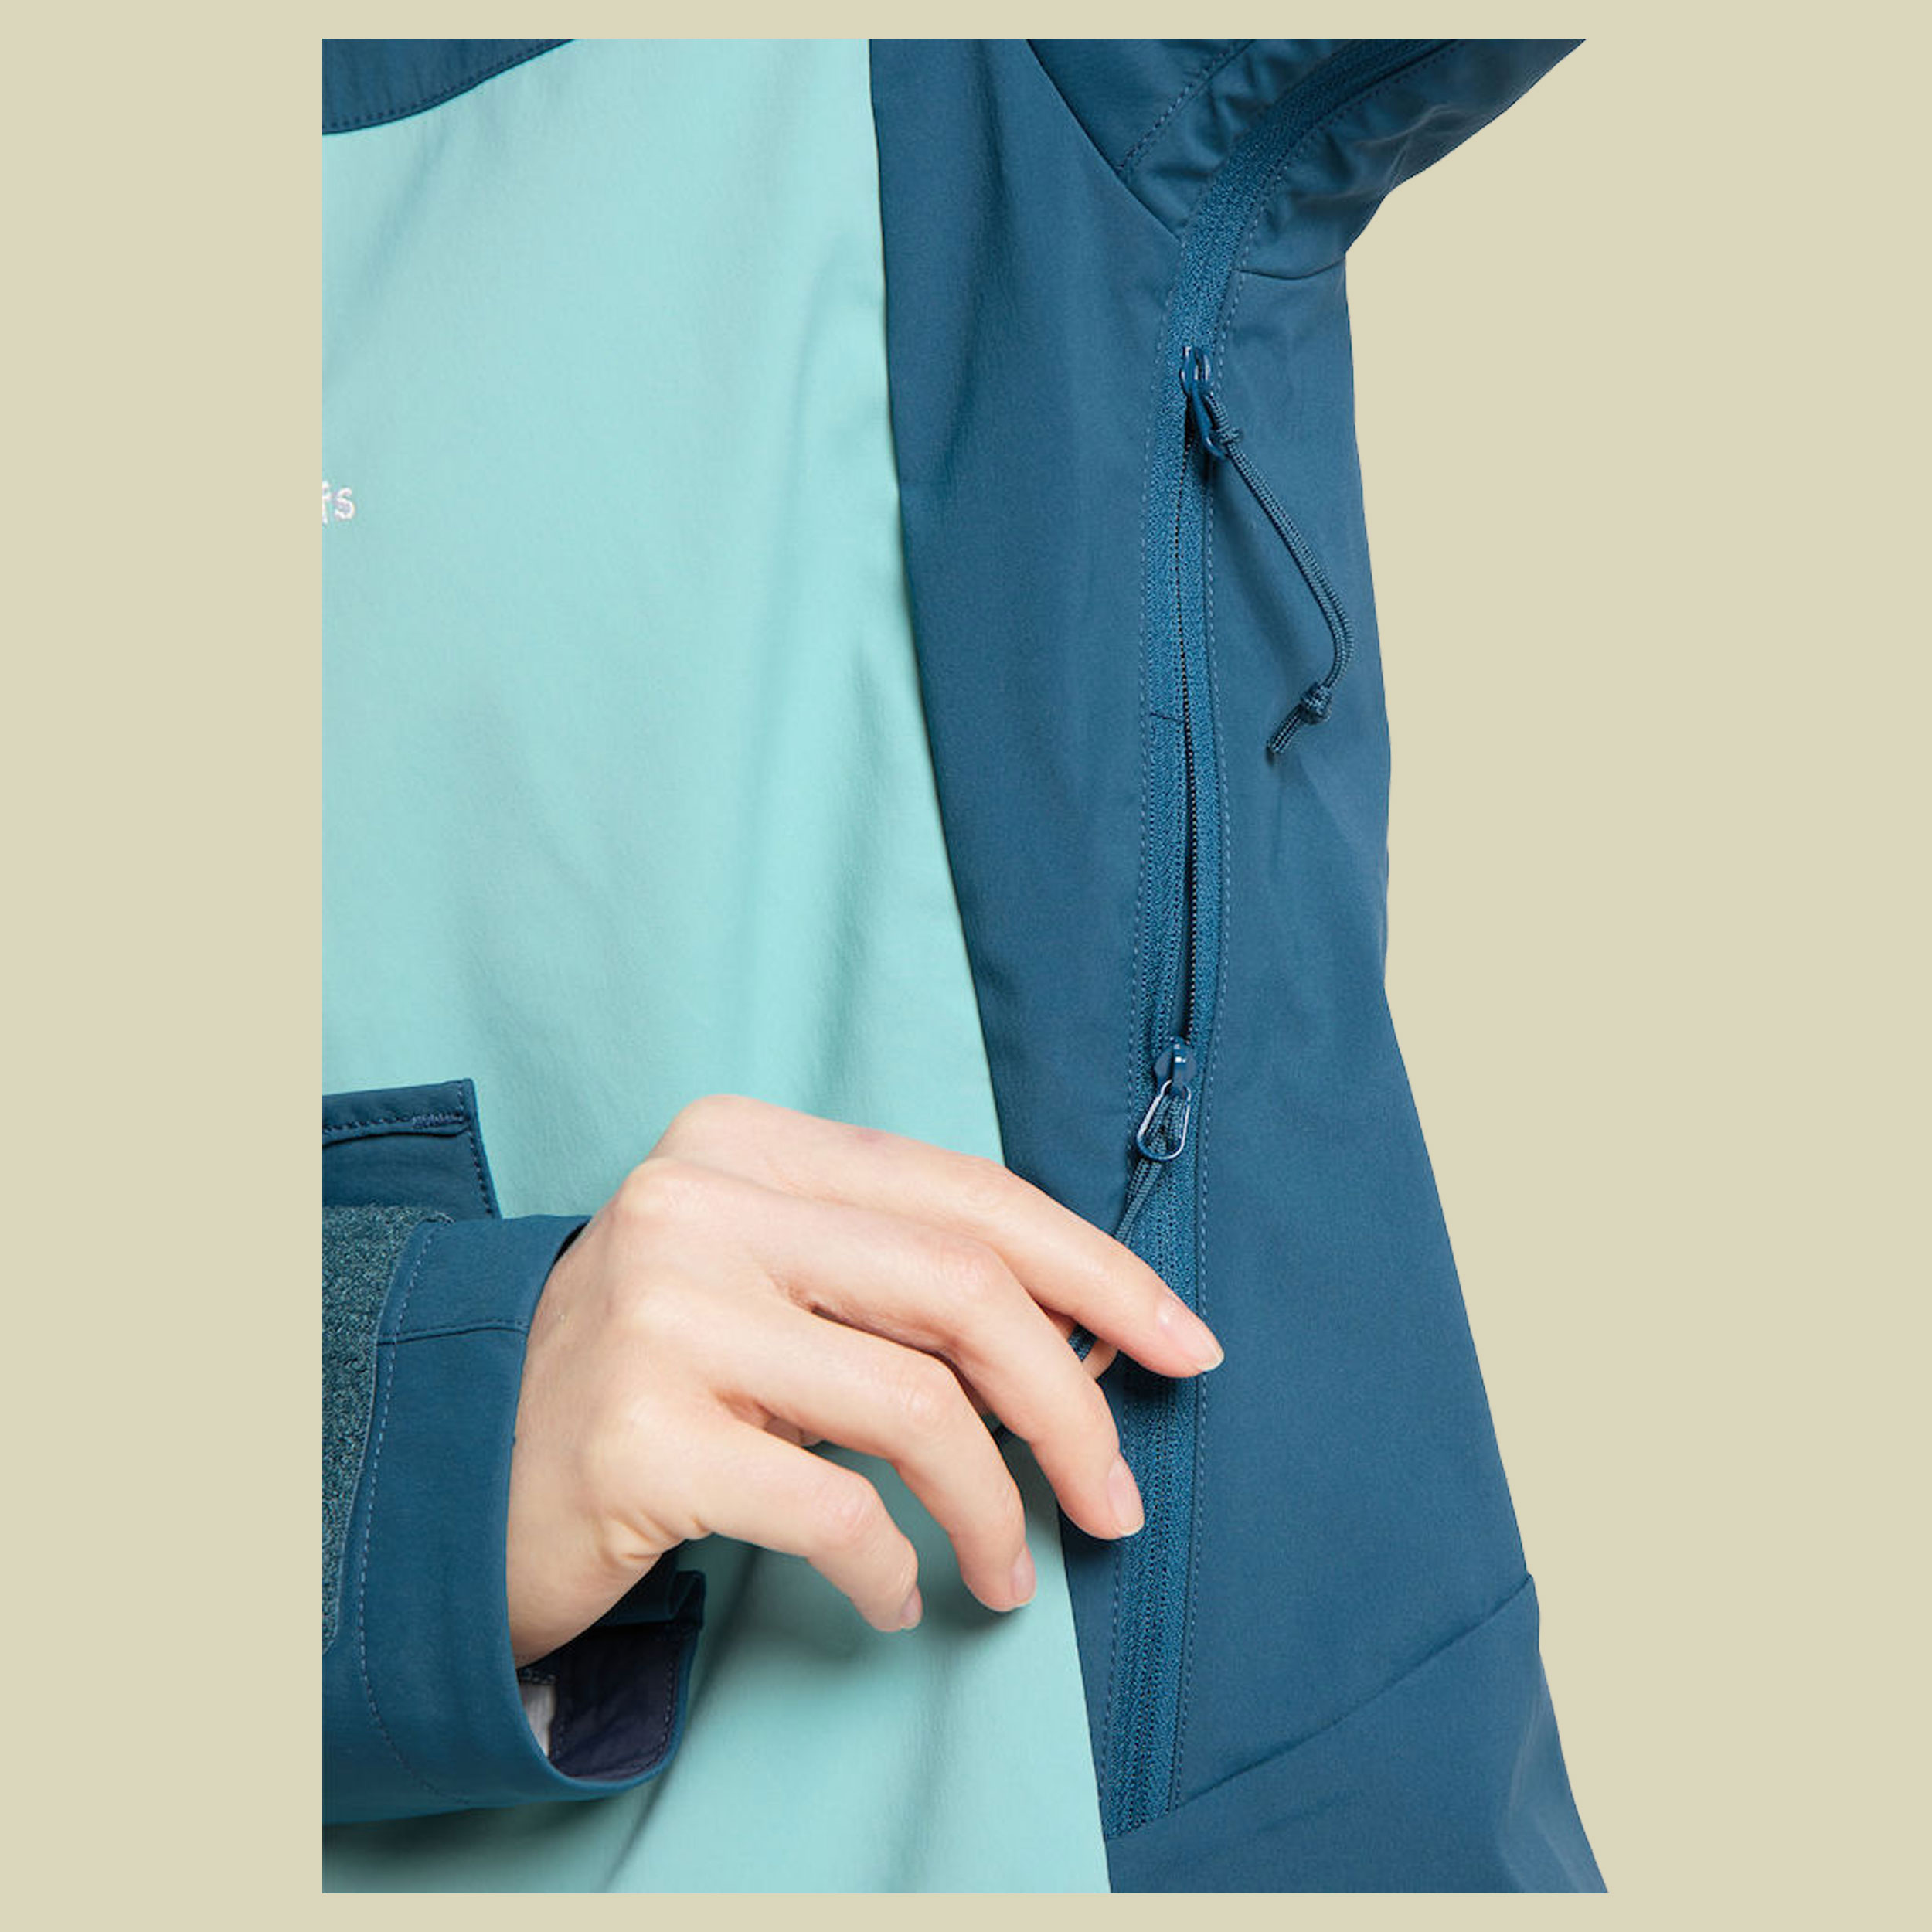 Touring Infinium Jacket Women Größe XL Farbe frost blue/dark ocean